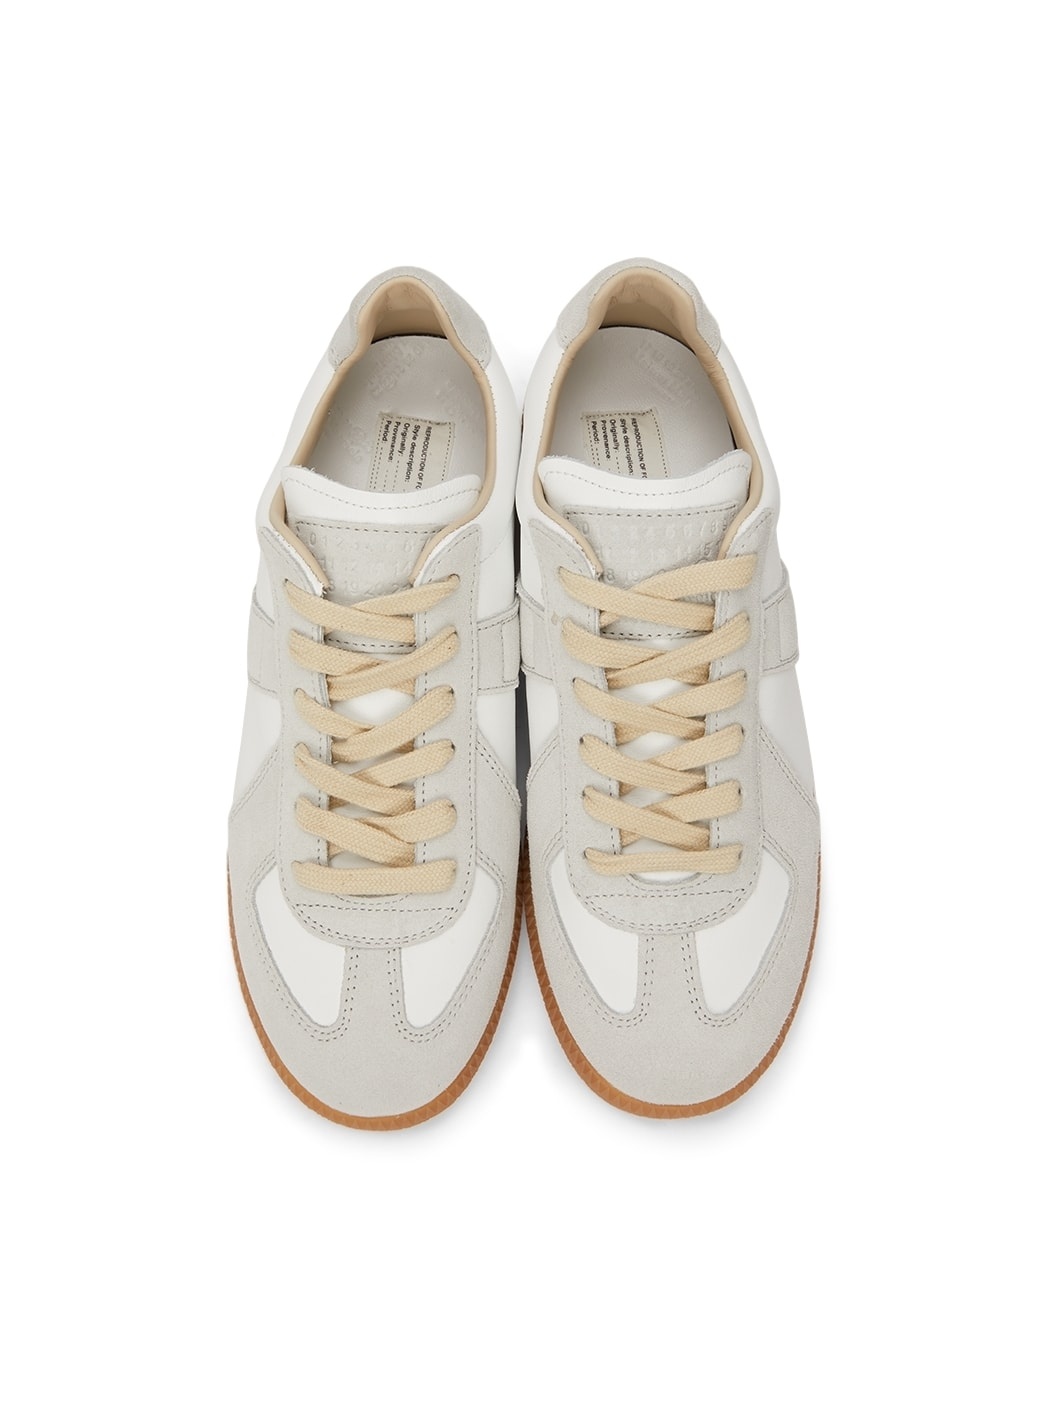 White & Grey Replica Sneakers - 5